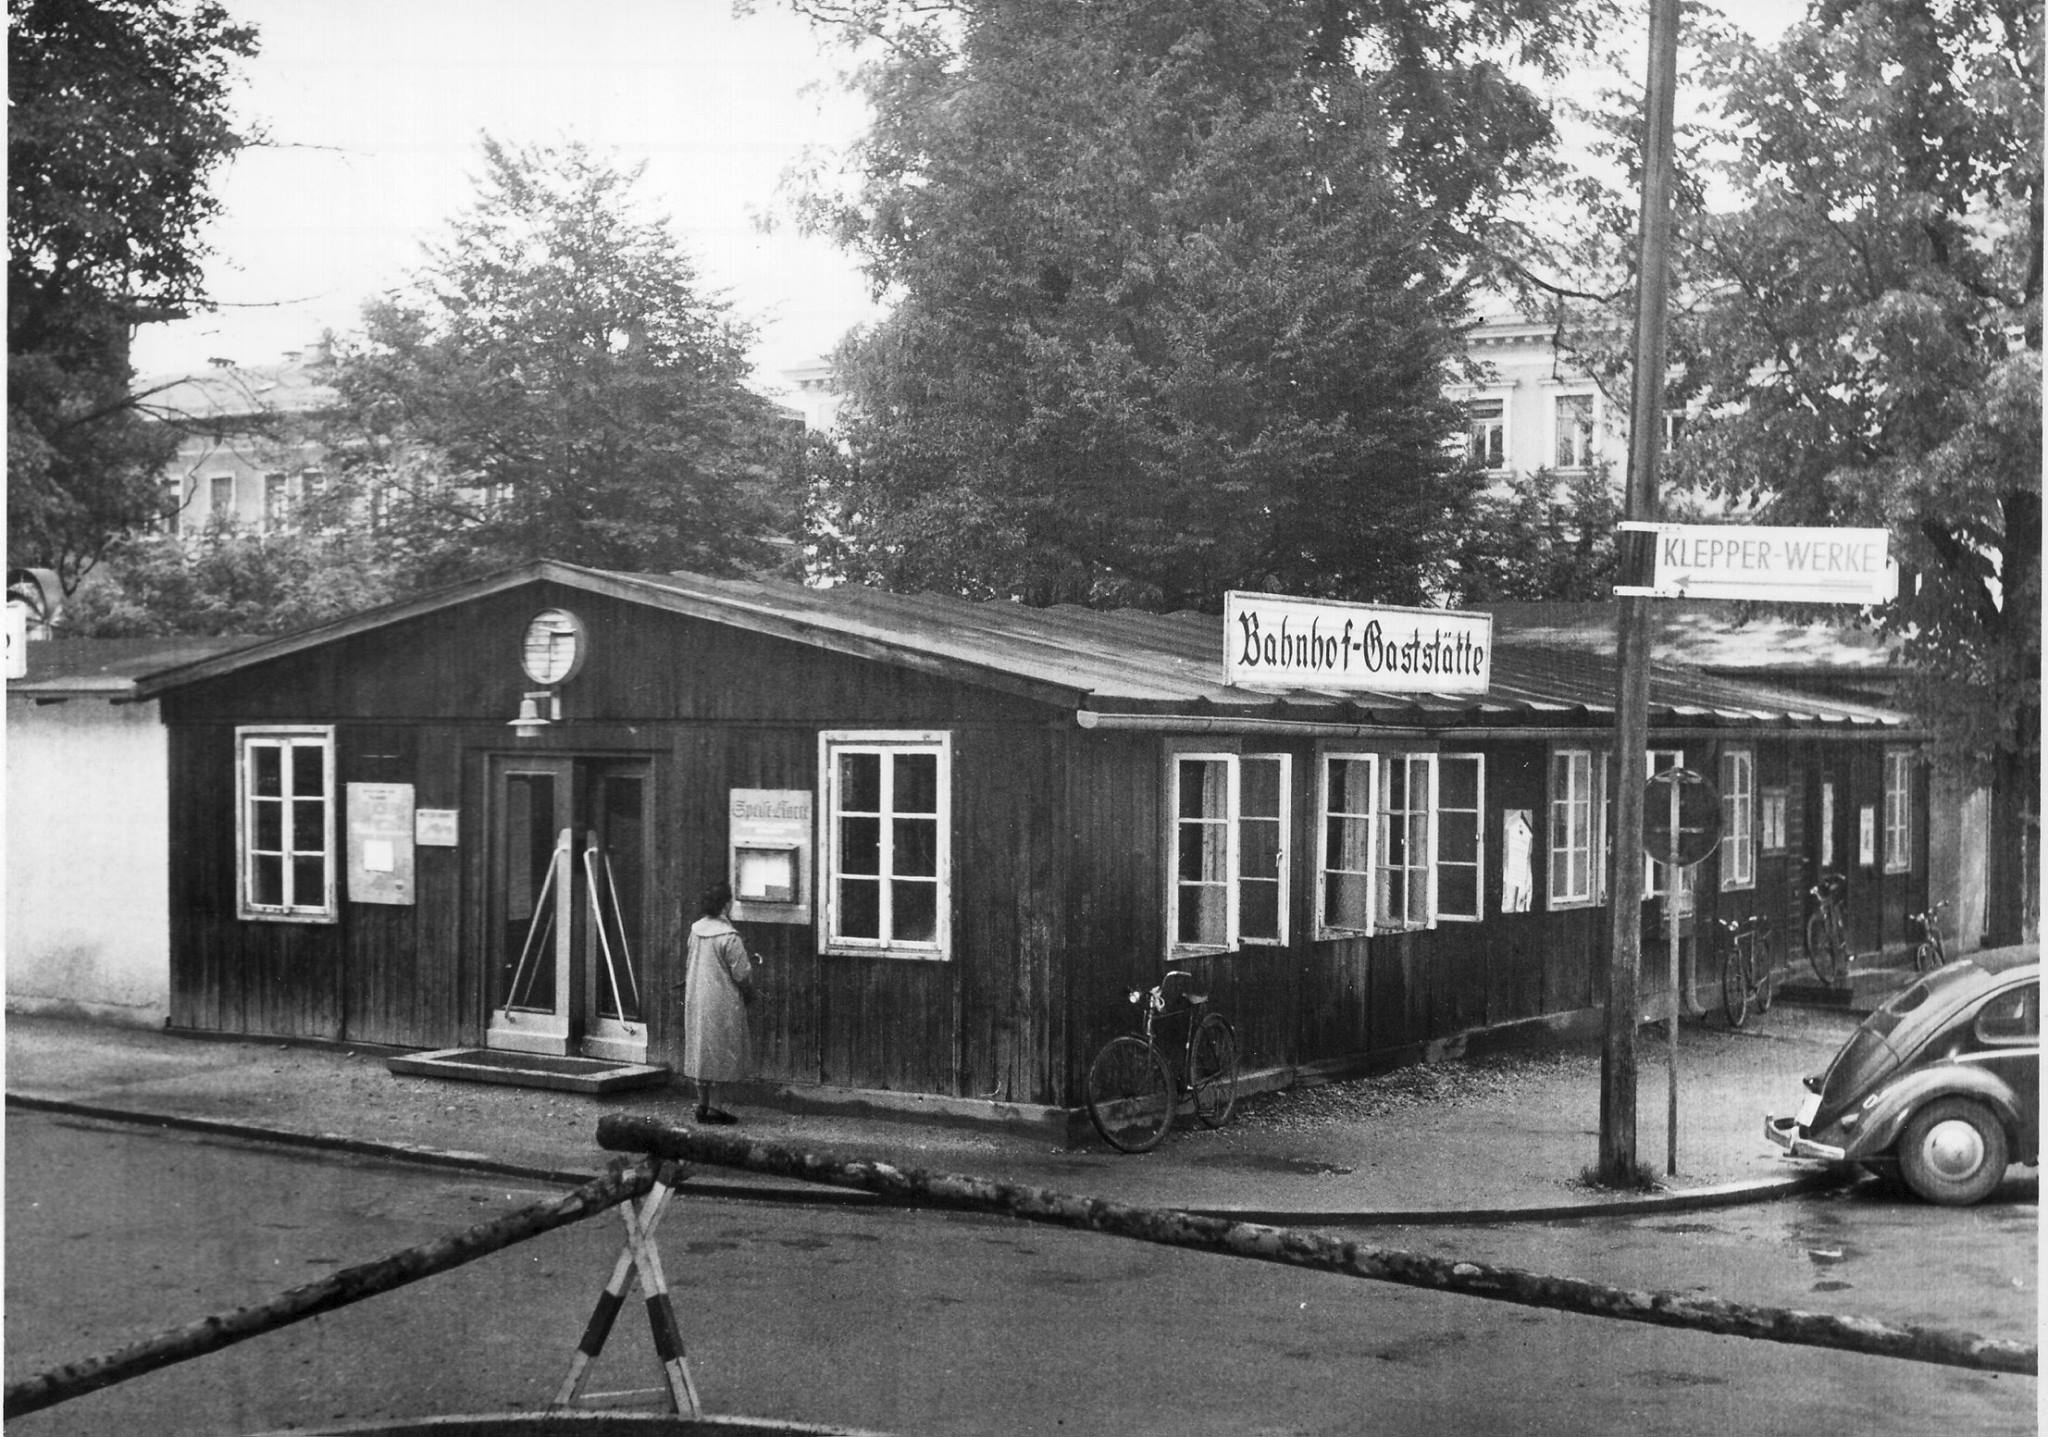 Bahnhof-Gastaette in Rosenheim mit VW-Kaefer und Radl davor in Rosenheim um ca. 1950